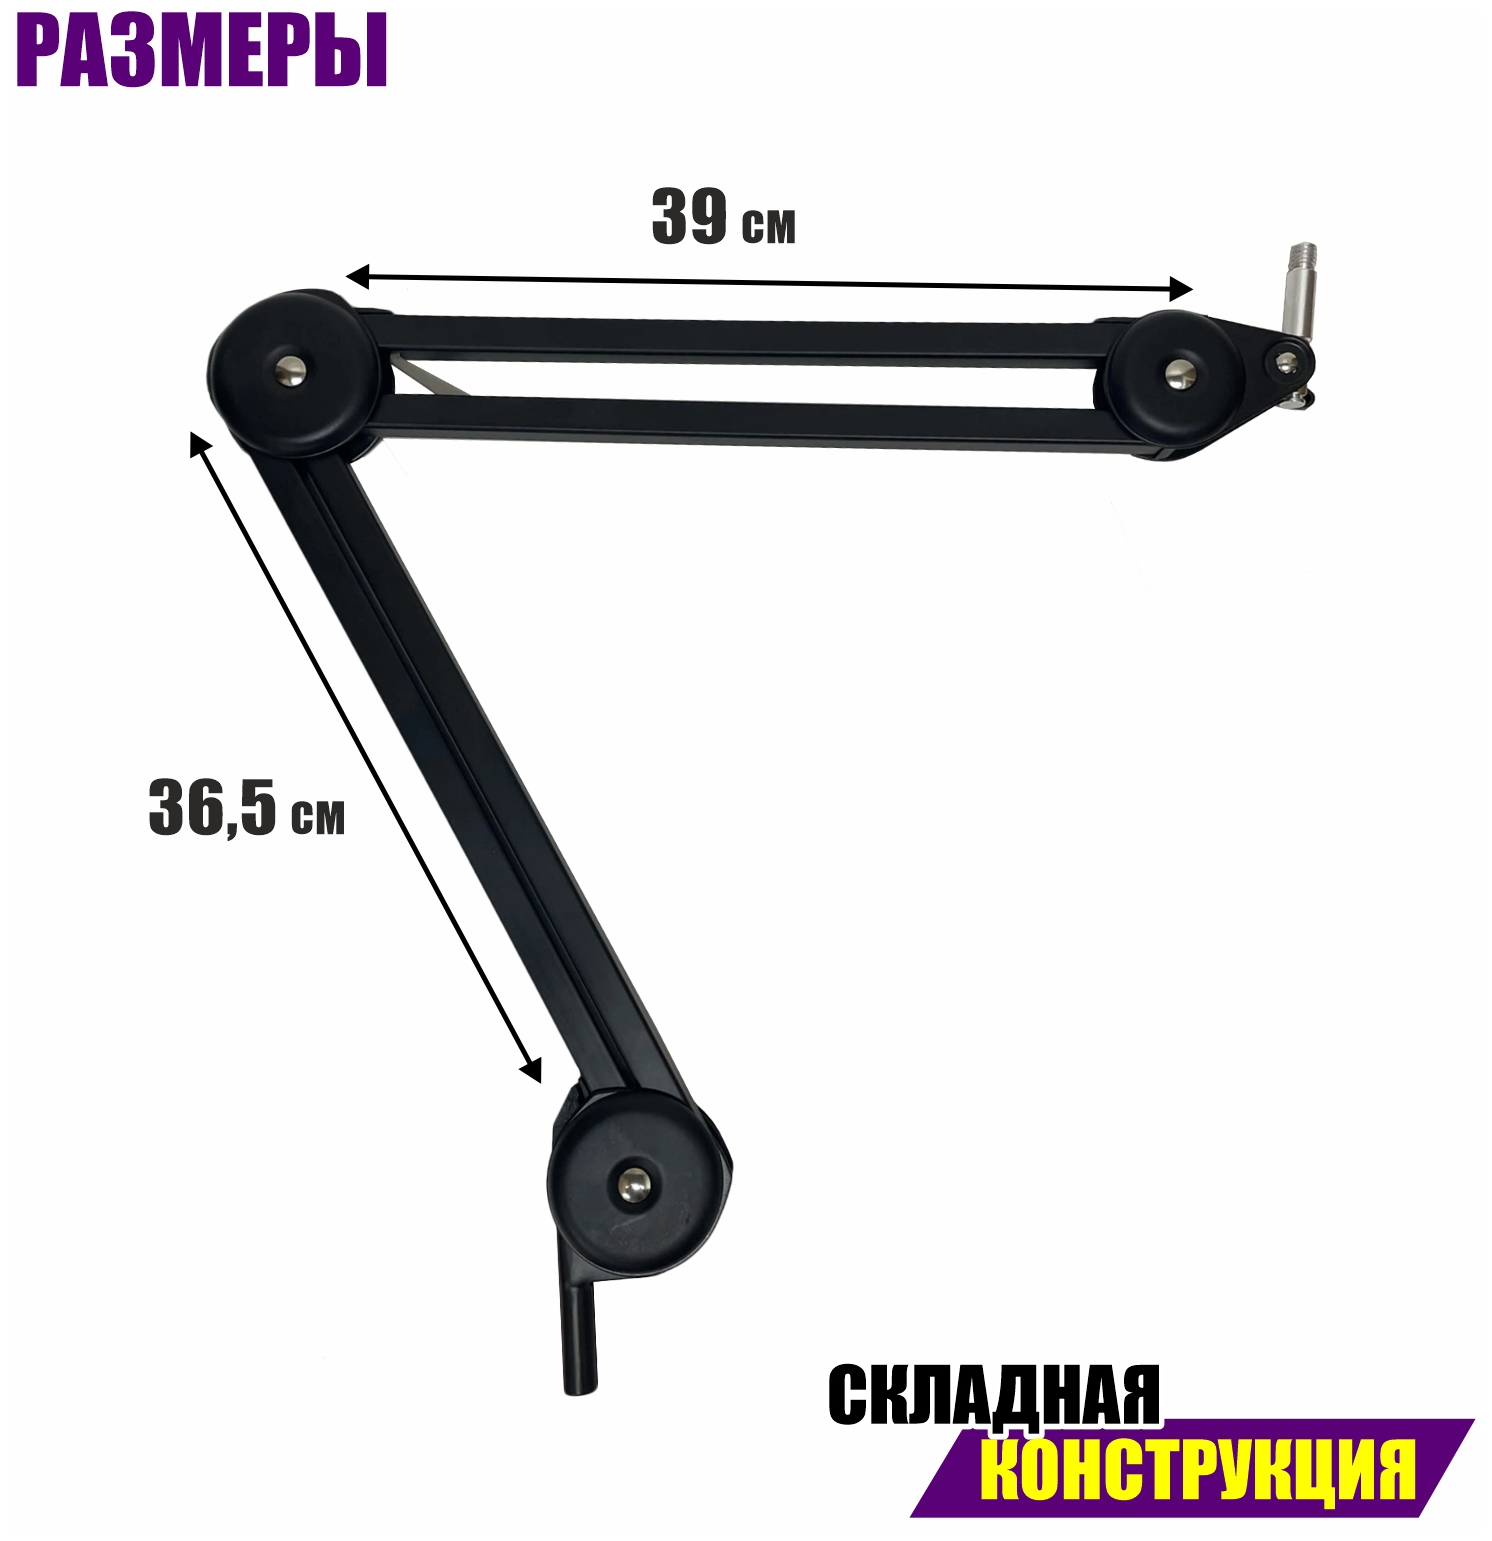 Настольная стойка пантограф PTS-C18 с усиленной струбциной, шарнирным креплением и держателем для планшета 18-29 см